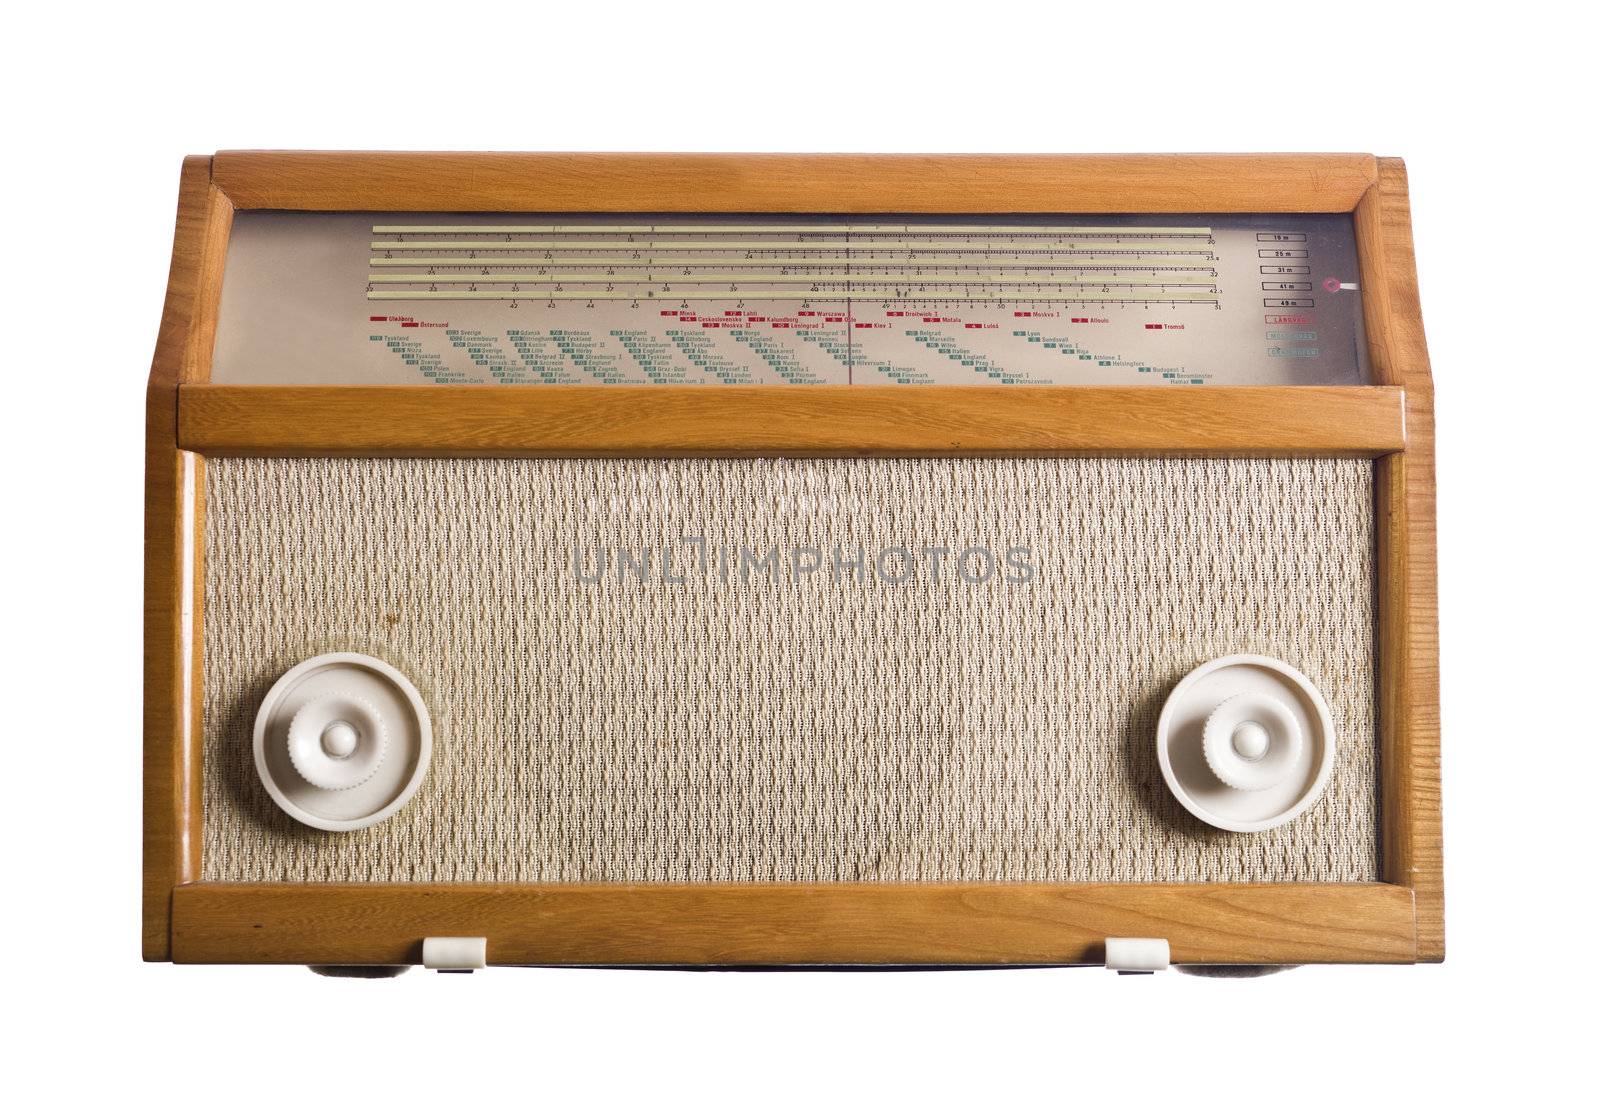 Vintage Radio isolated on white background